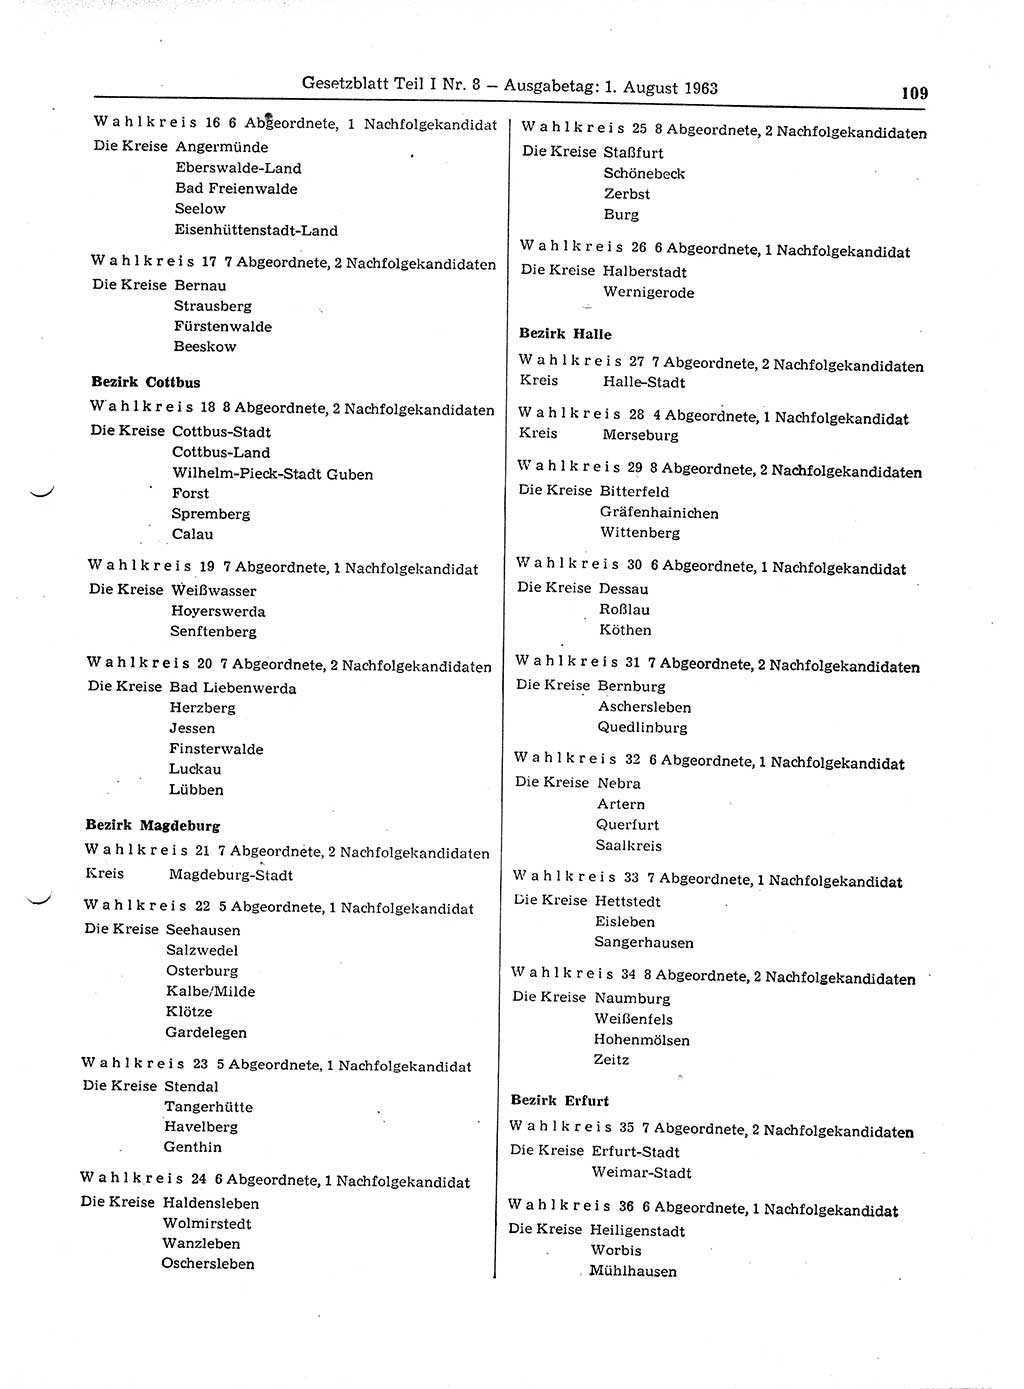 Gesetzblatt (GBl.) der Deutschen Demokratischen Republik (DDR) Teil Ⅰ 1963, Seite 109 (GBl. DDR Ⅰ 1963, S. 109)